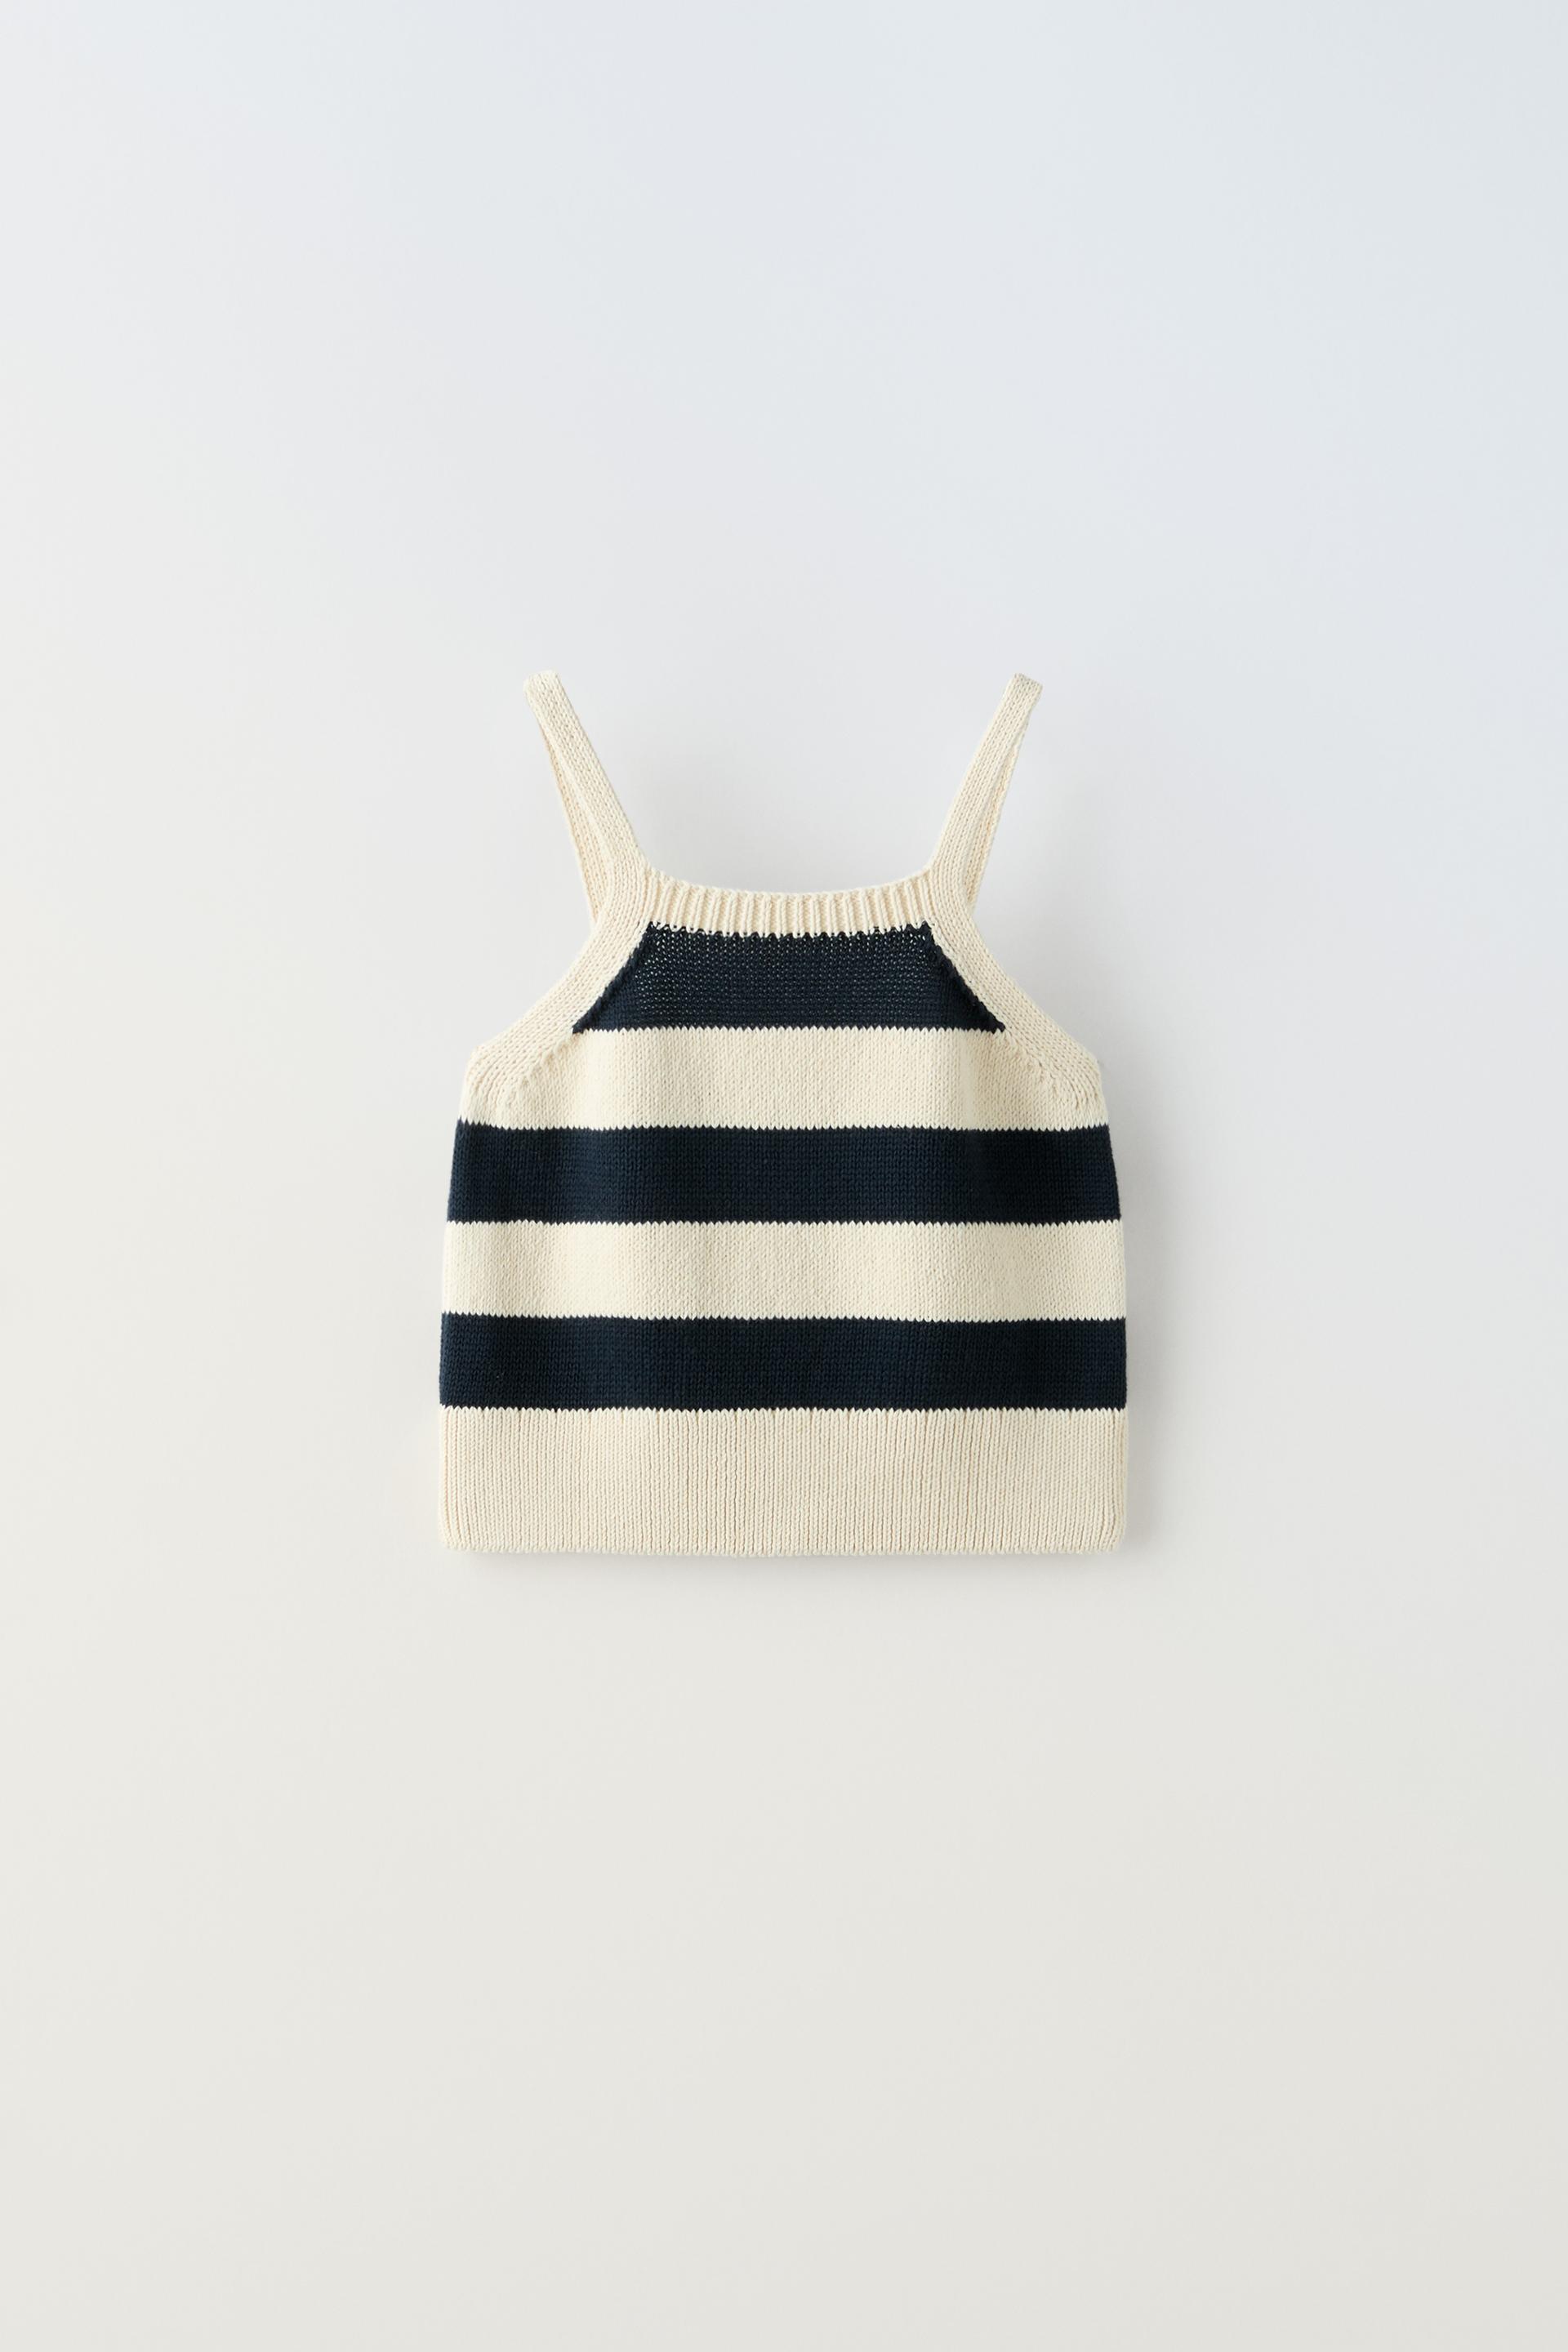 Топ Zara Striped Knit, светло-бежевый топ zara knit jacquard asymmetric бежевый